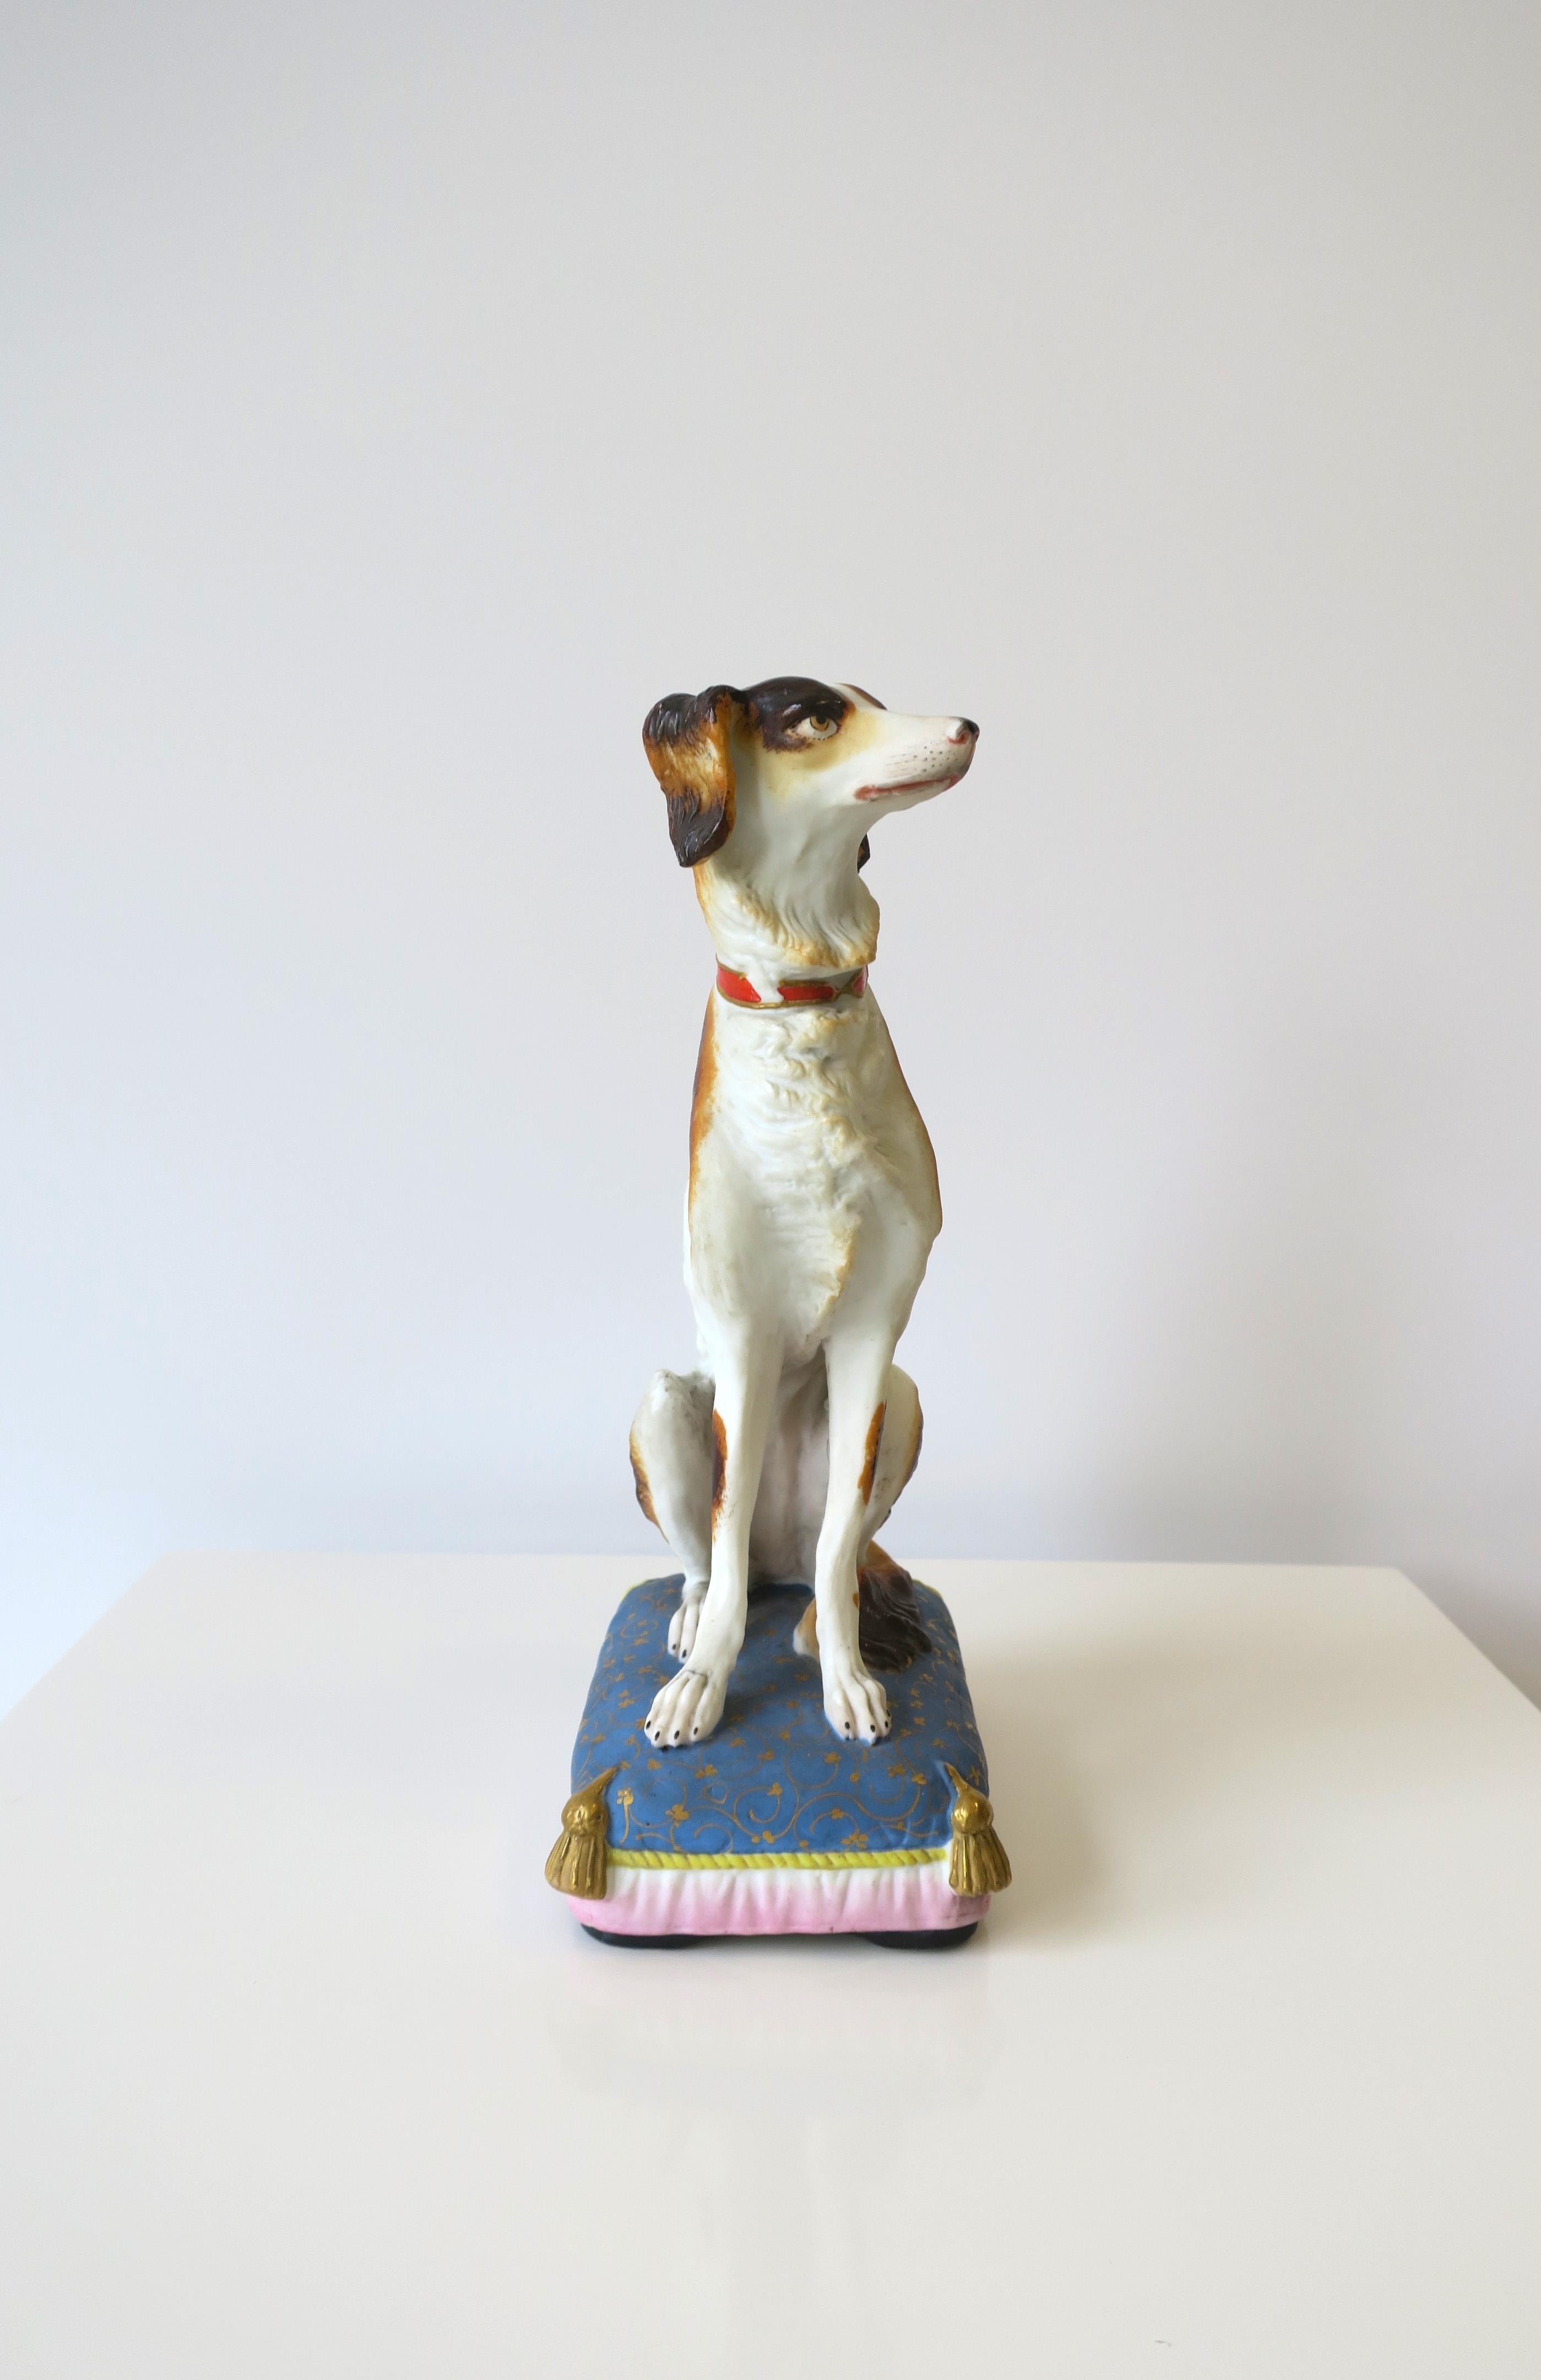 Ein schöner königlicher Hund aus Porzellan, der auf einem schicken Kissen sitzt, ca. Mitte des 20. Jahrhunderts. Ein tolles Dekorationsobjekt. Das Stück ist aus matter, unglasierter Porzellankeramik und zeigt einen braun-weißen Hund mit rot-goldenem